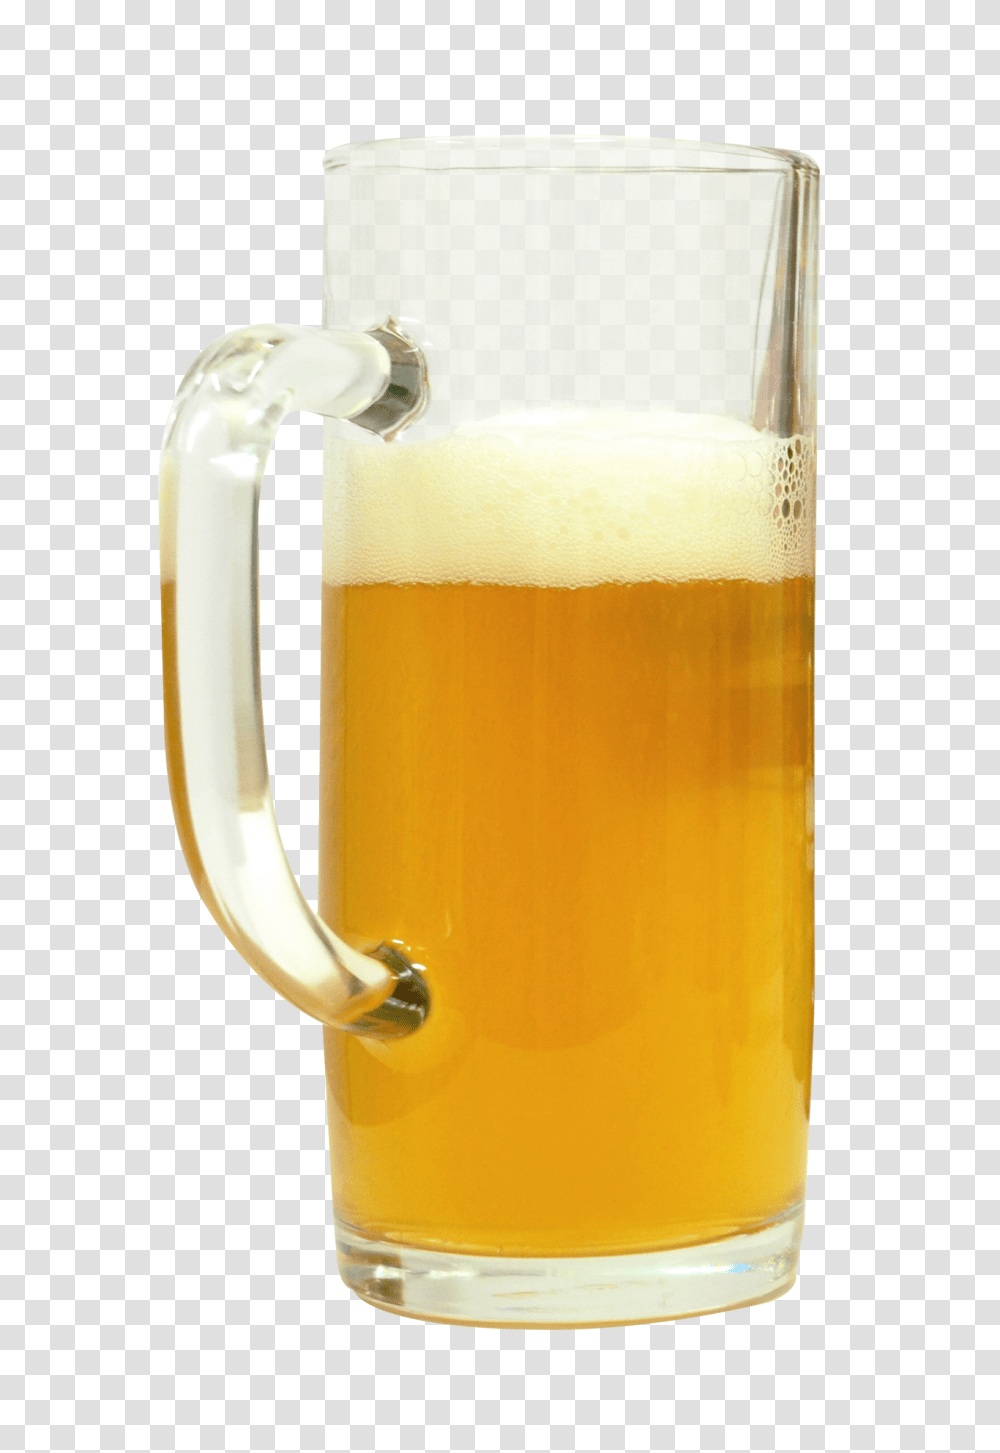 Beer Glass Image, Drink, Alcohol, Beverage, Jug Transparent Png